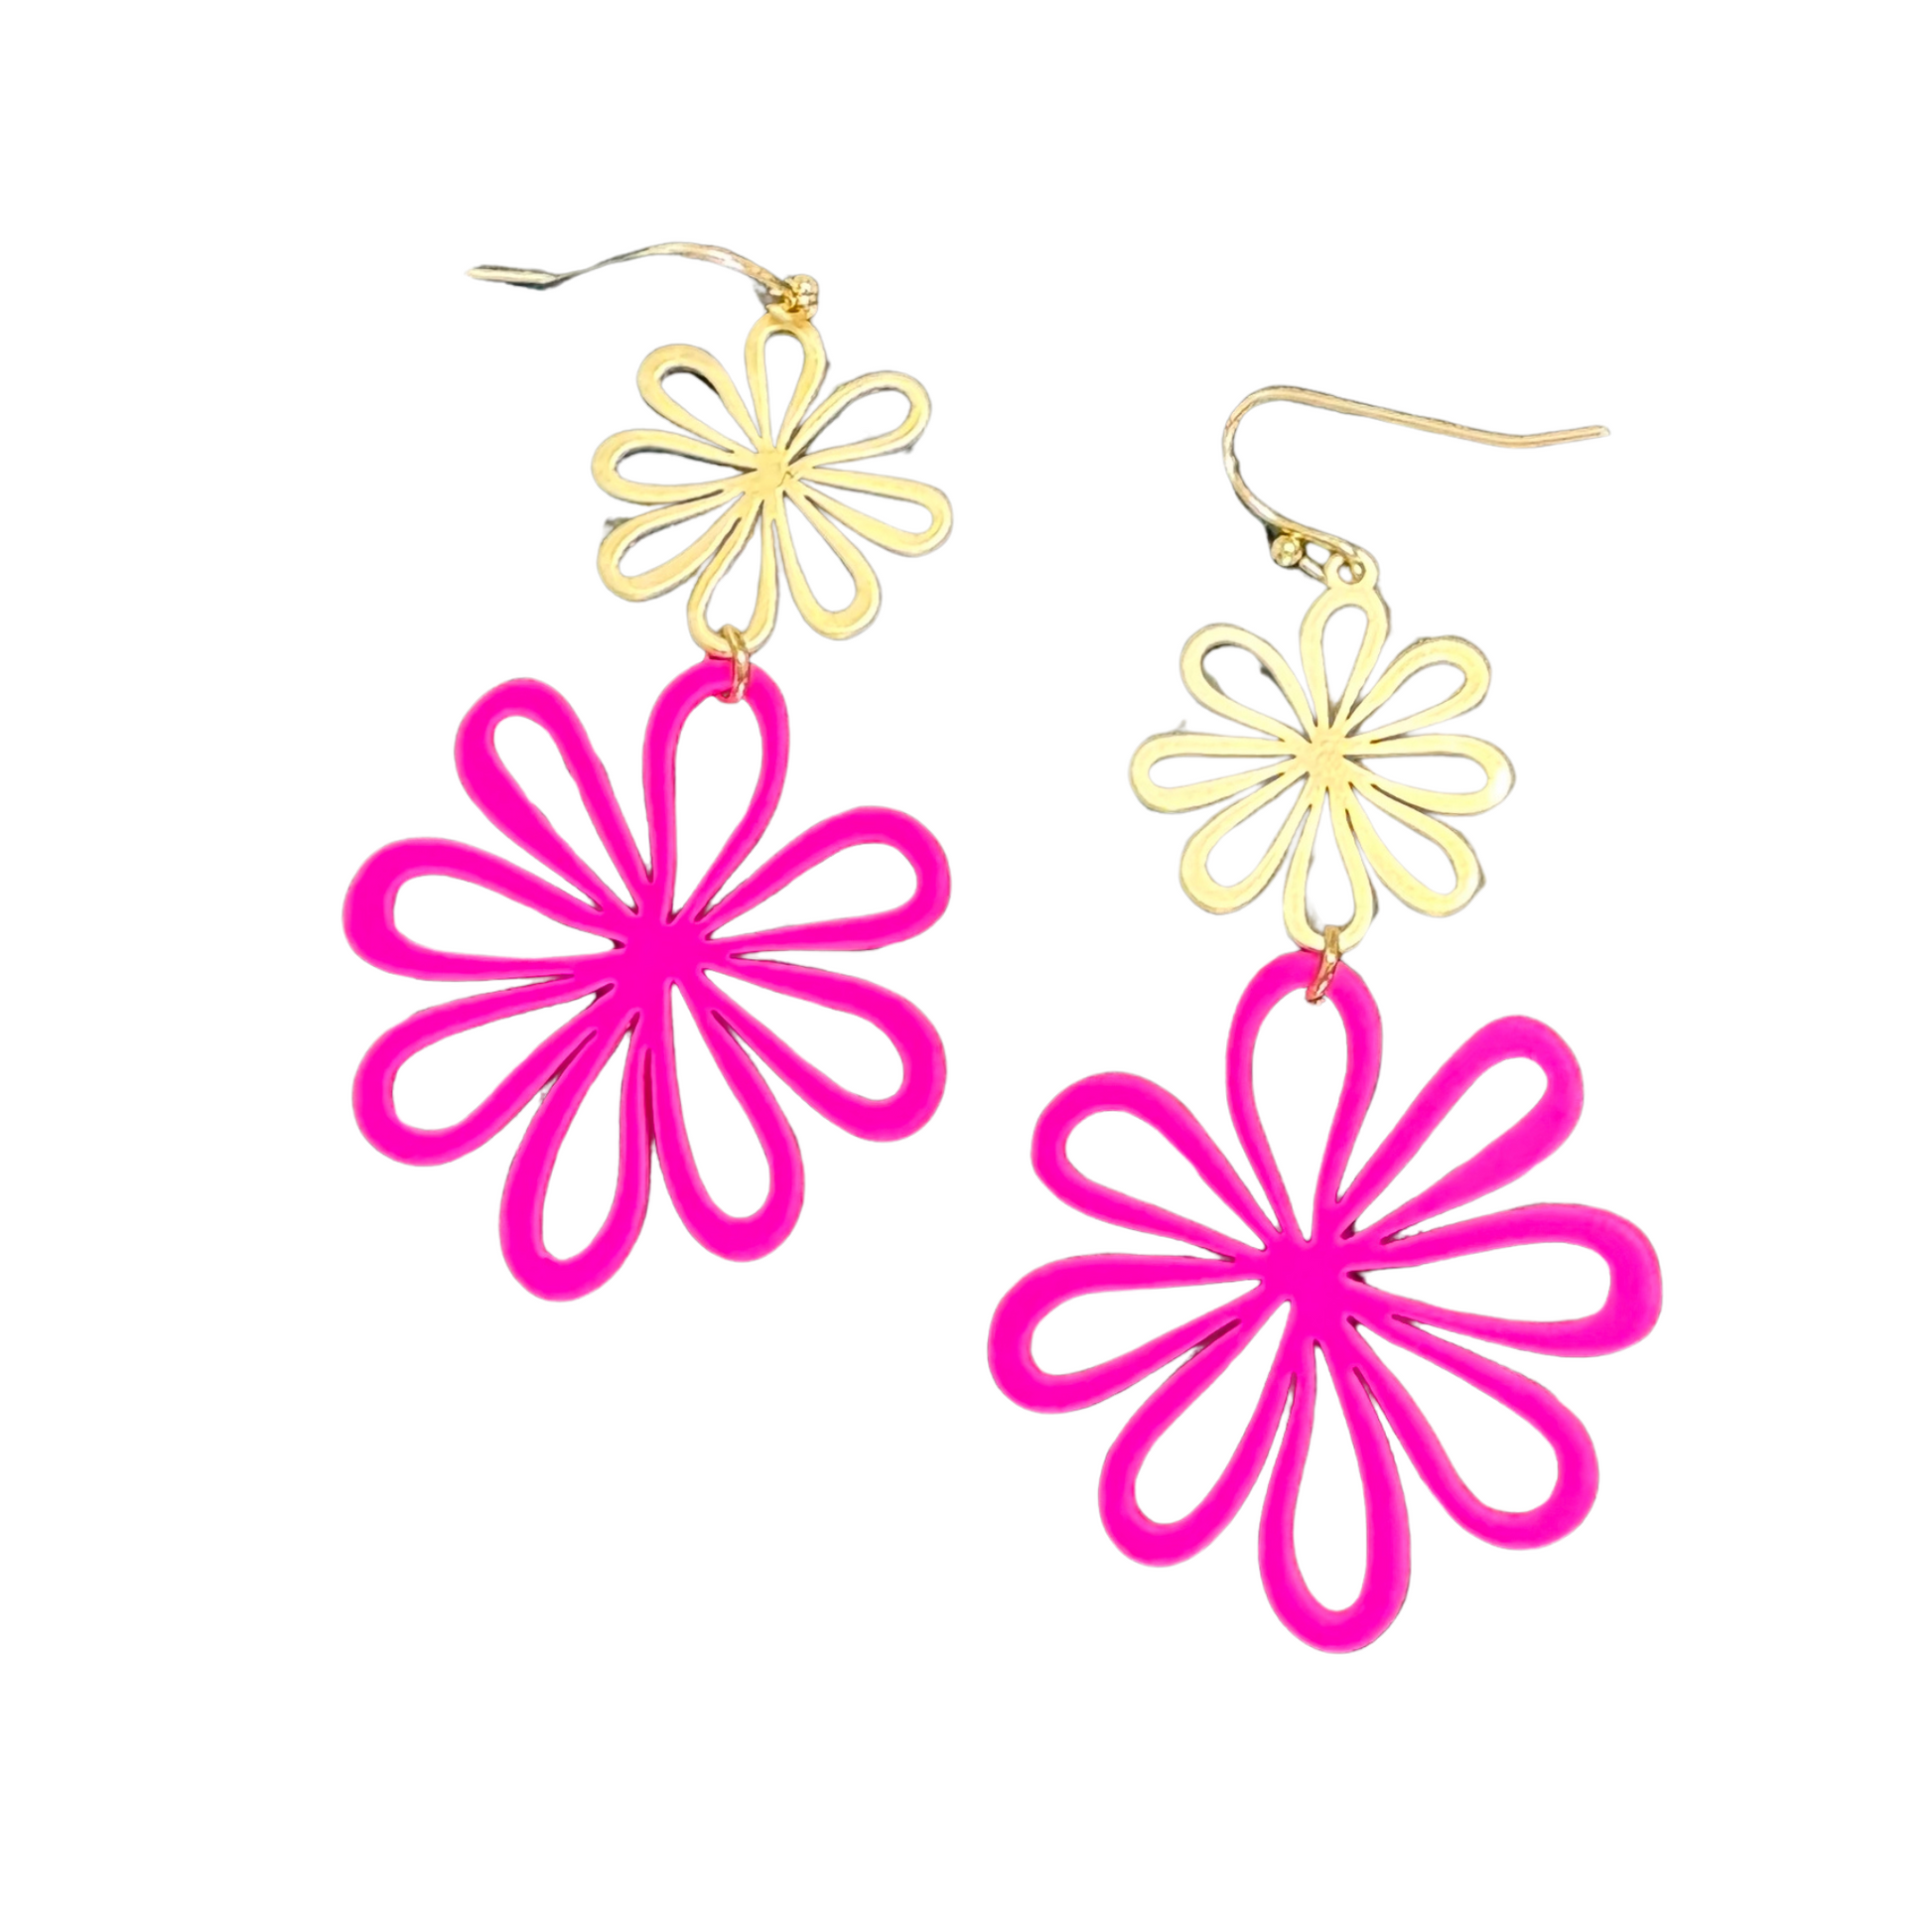 Double flower dangle earrings in gold ad fuchsia